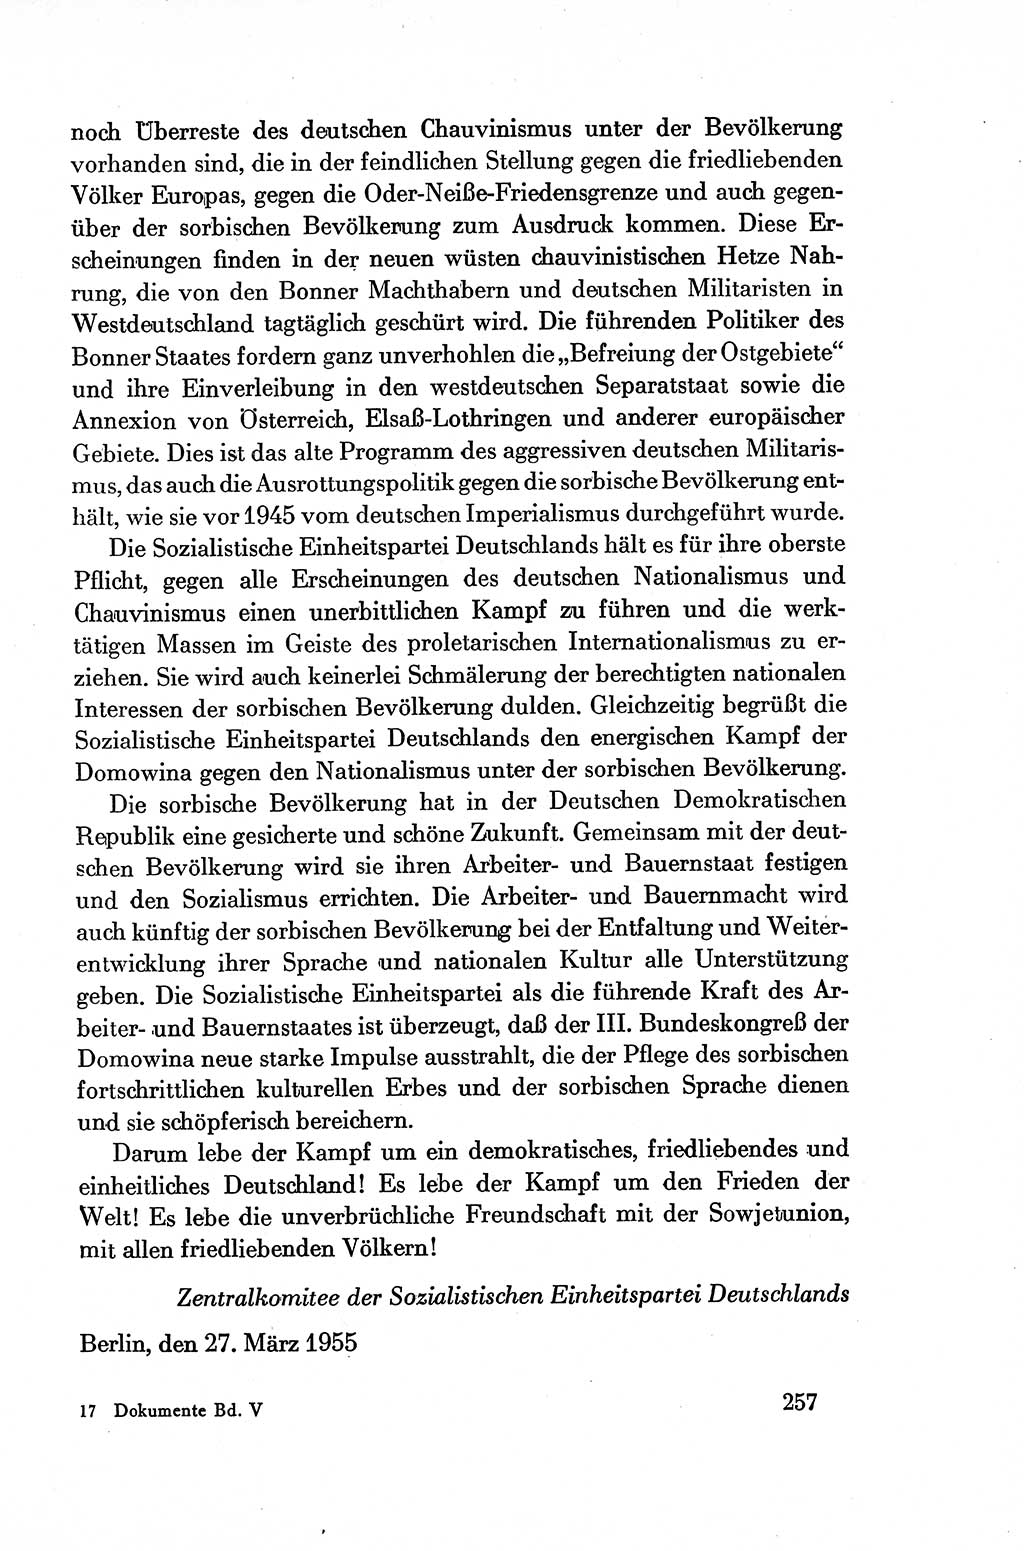 Dokumente der Sozialistischen Einheitspartei Deutschlands (SED) [Deutsche Demokratische Republik (DDR)] 1954-1955, Seite 257 (Dok. SED DDR 1954-1955, S. 257)